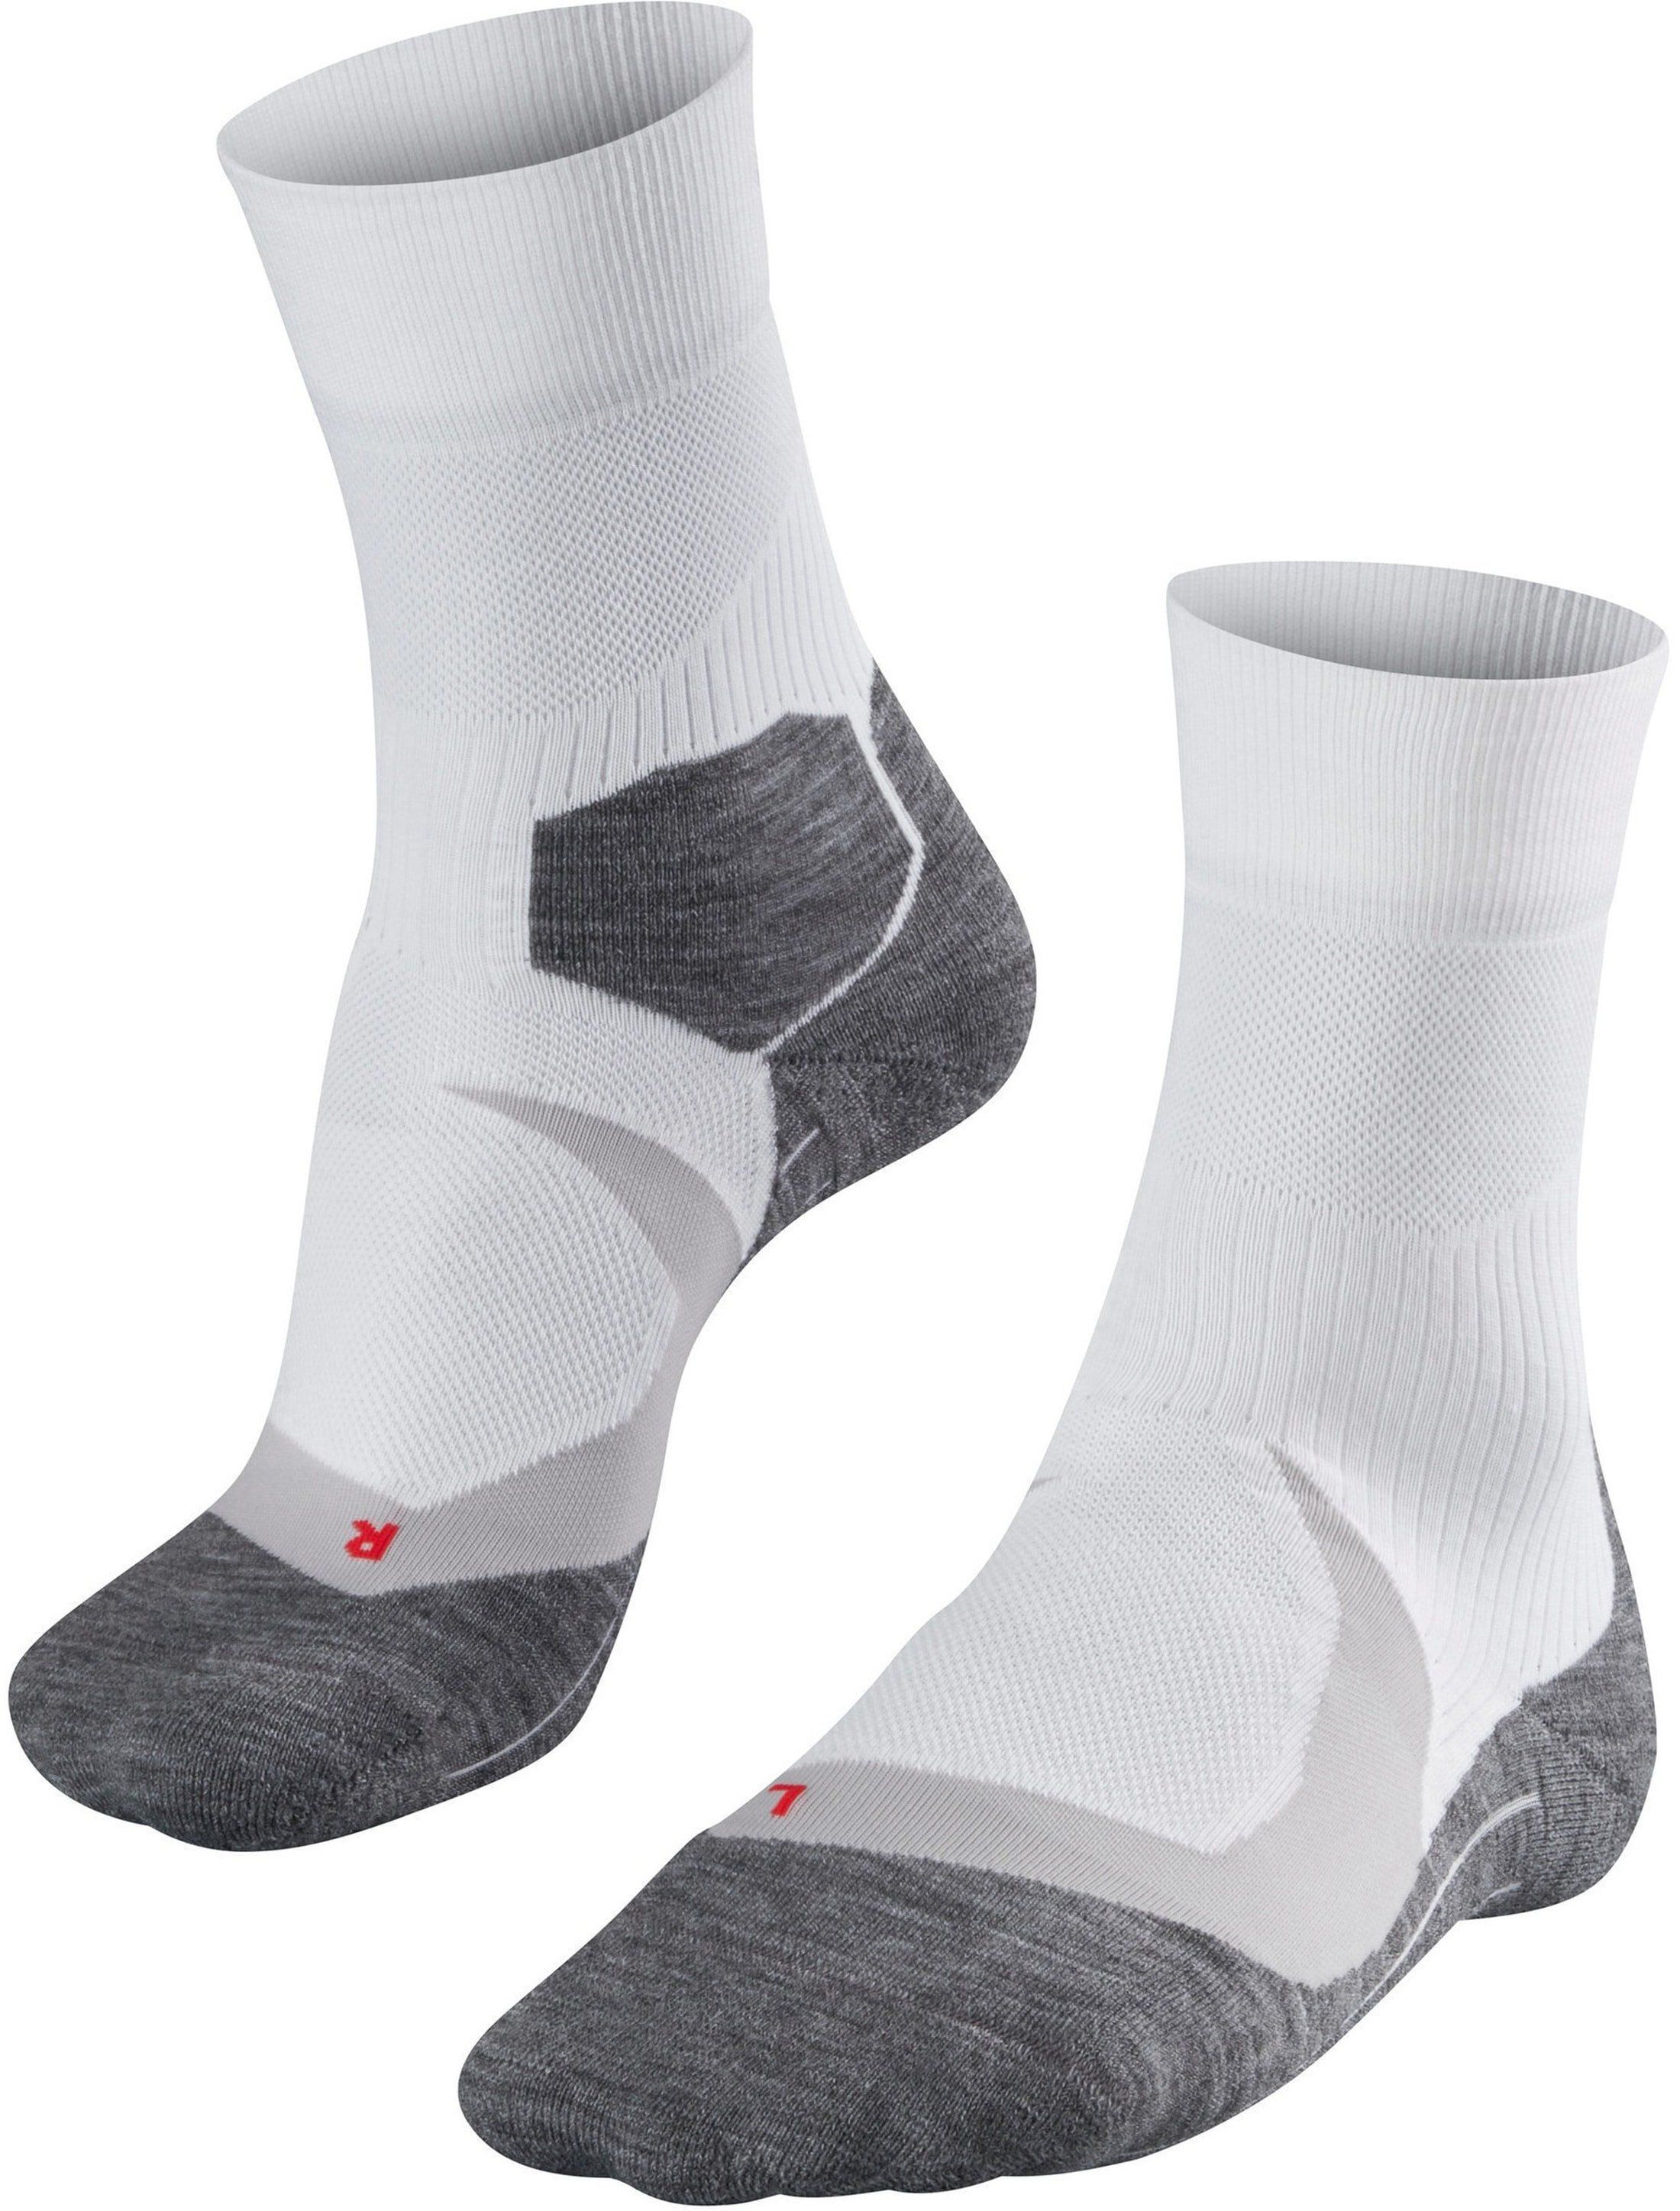 Falke RU4 Cool Socks White size 39-41